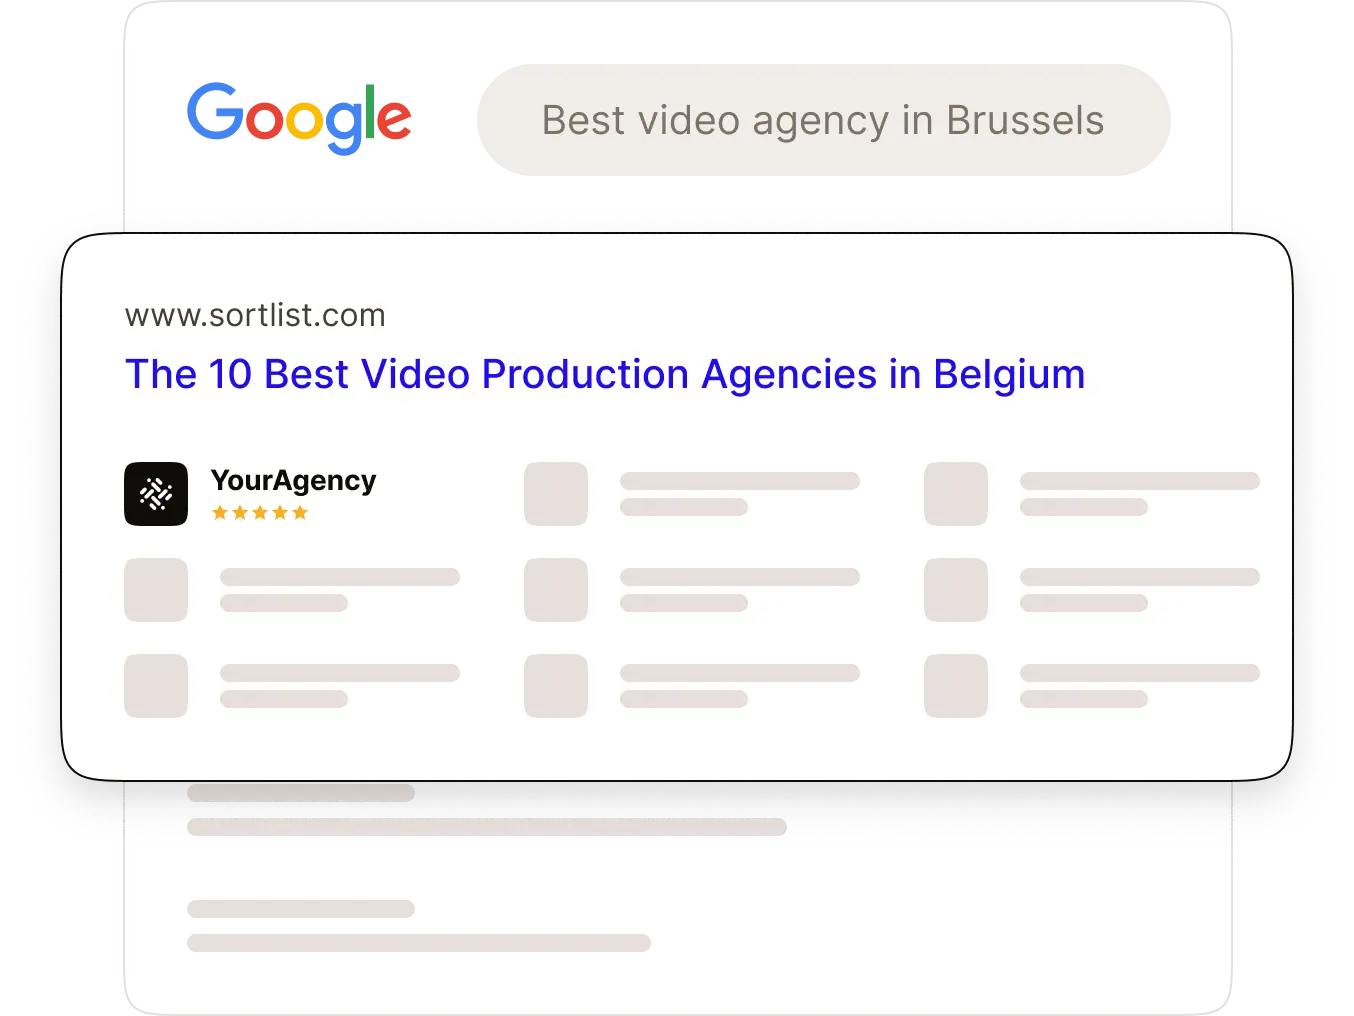 Les 10 meilleures agences de production vidéo en Belgique